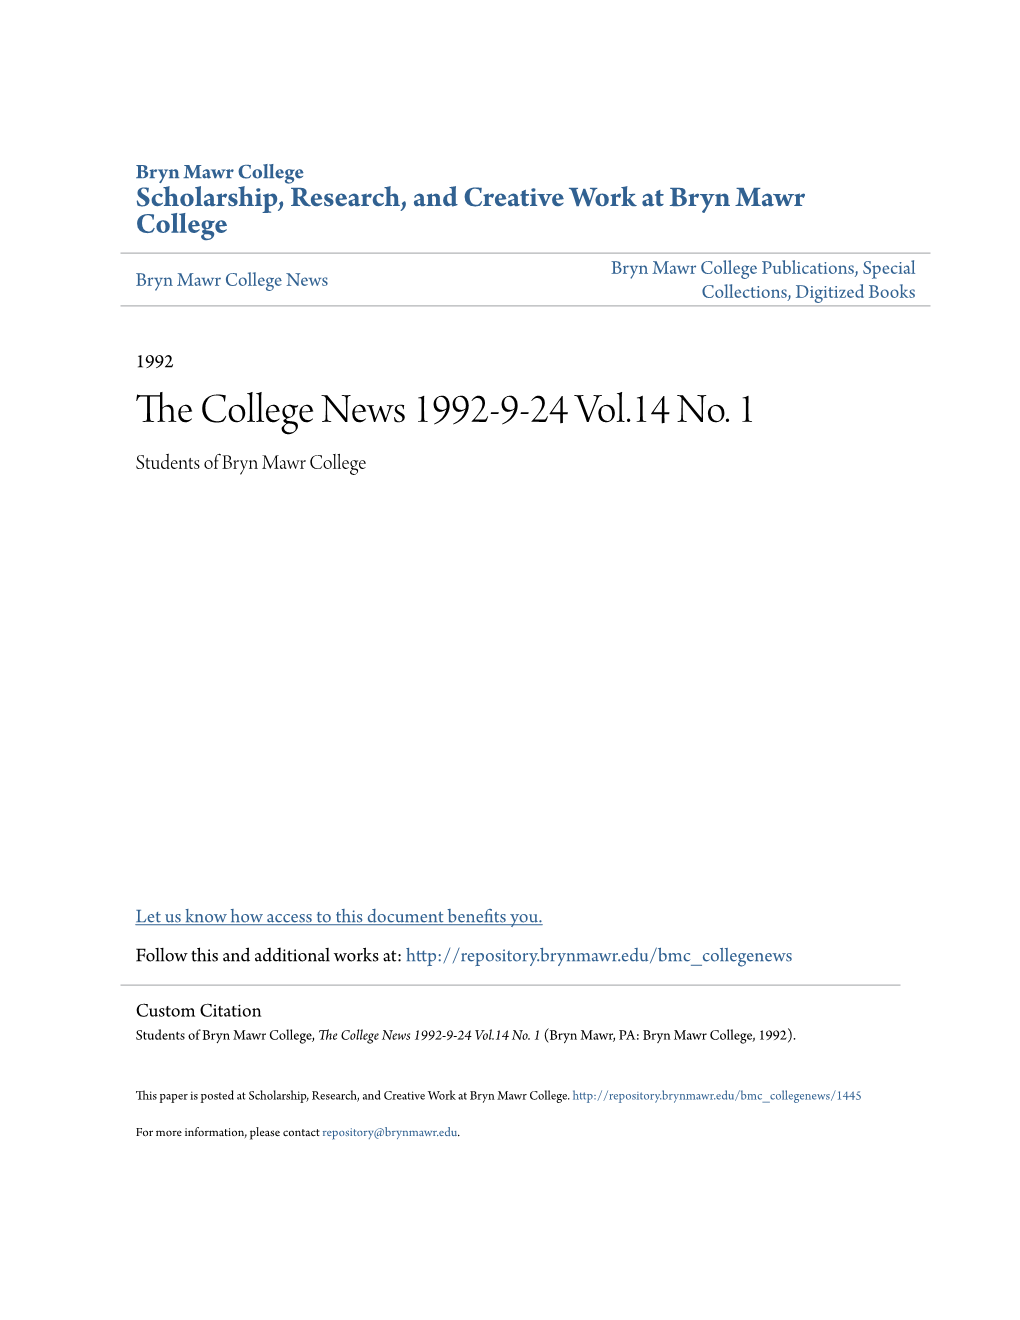 The College News 1992-9-24 Vol.14 No. 1 (Bryn Mawr, PA: Bryn Mawr College, 1992)